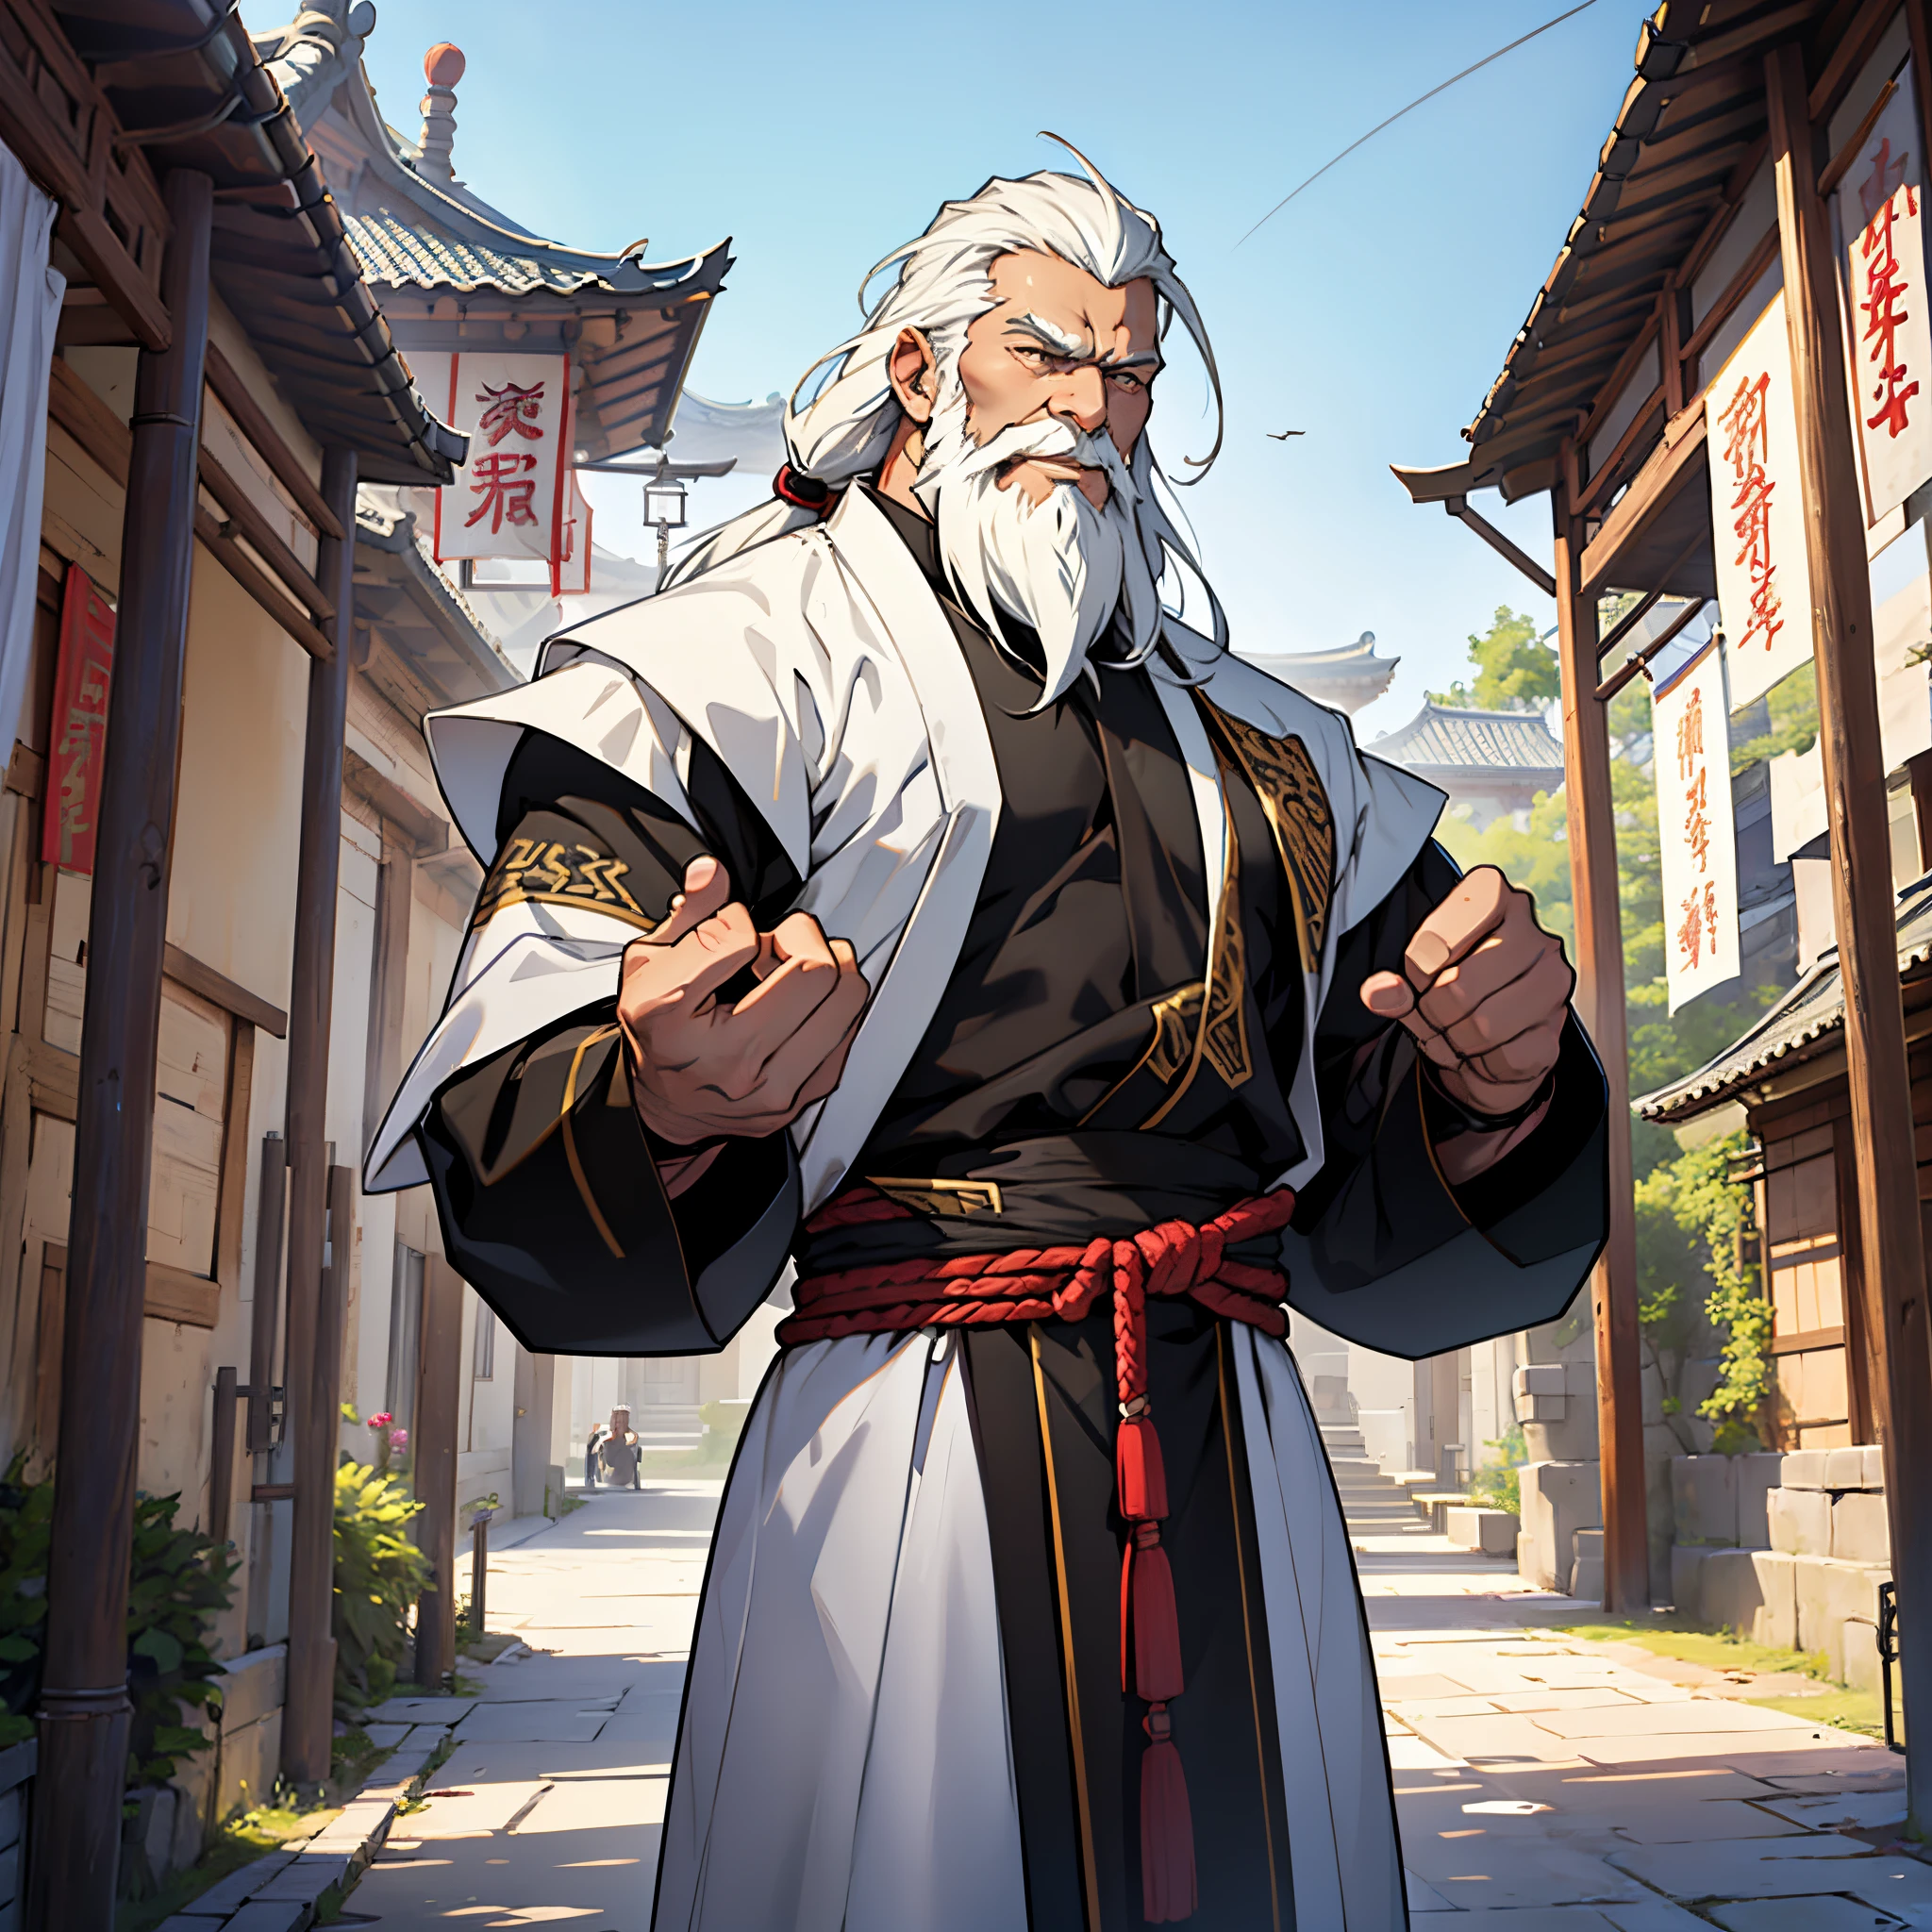 杰作, 最好的质量, 详细的, 电影学, 4k, 背景:中国古城里的亭子前, 黑色的&穿着白色传统服装和盔甲, 一位肌肉发达的老者，绝对是武术高手.(很长的头发和很长的胡子) , 很酷的姿势